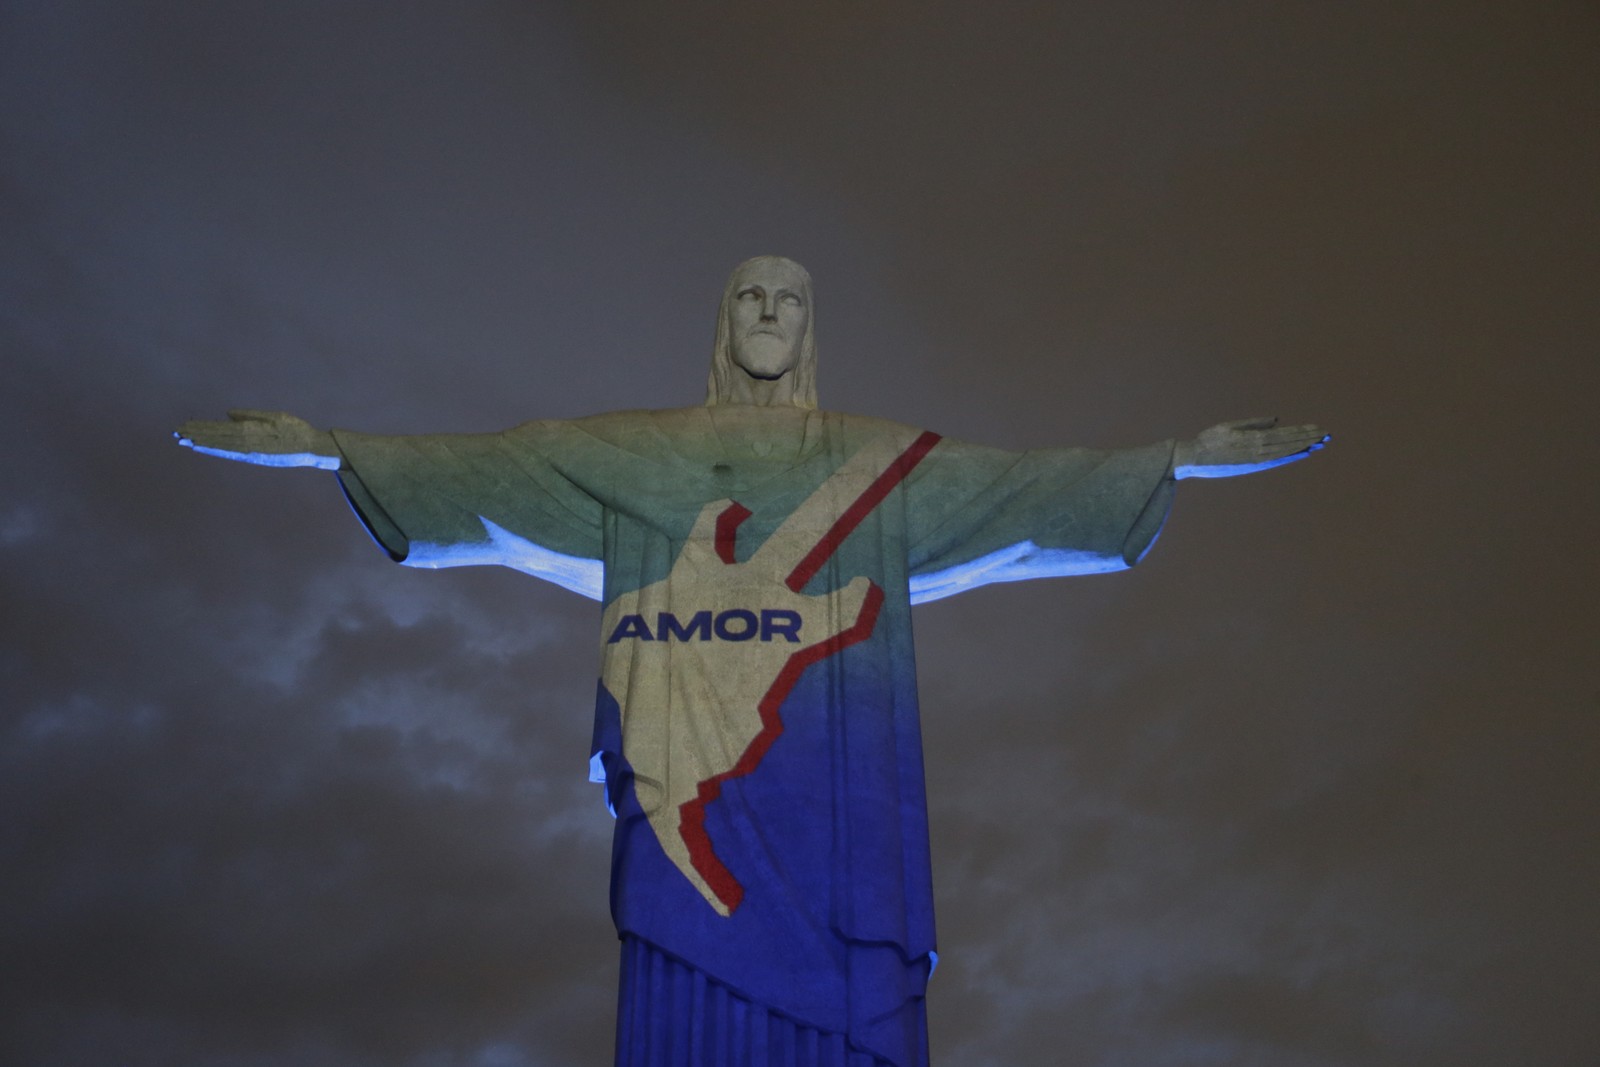 Cristo Redentor recebe projeção de imagens em homenagem aos 40 anos do Rock in Rio — Foto: Domingos Peixoto / Agência O Globo